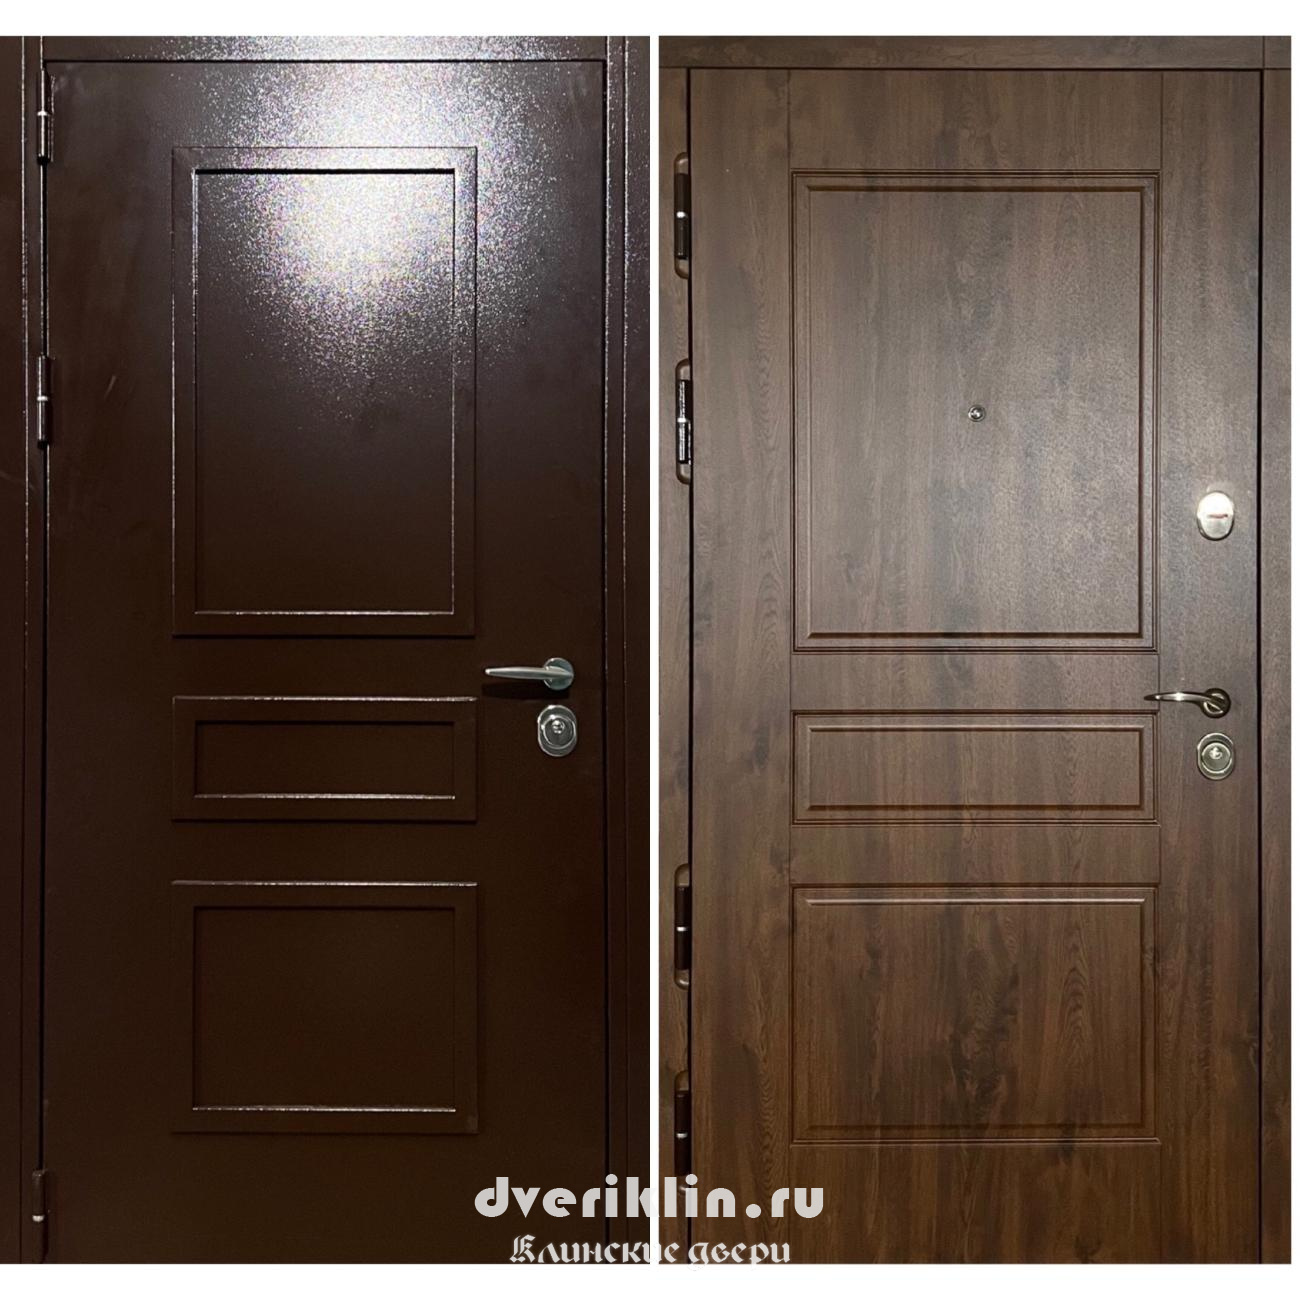 Дверь с рисунком на металле DPR-03 (С рисунком на металле)